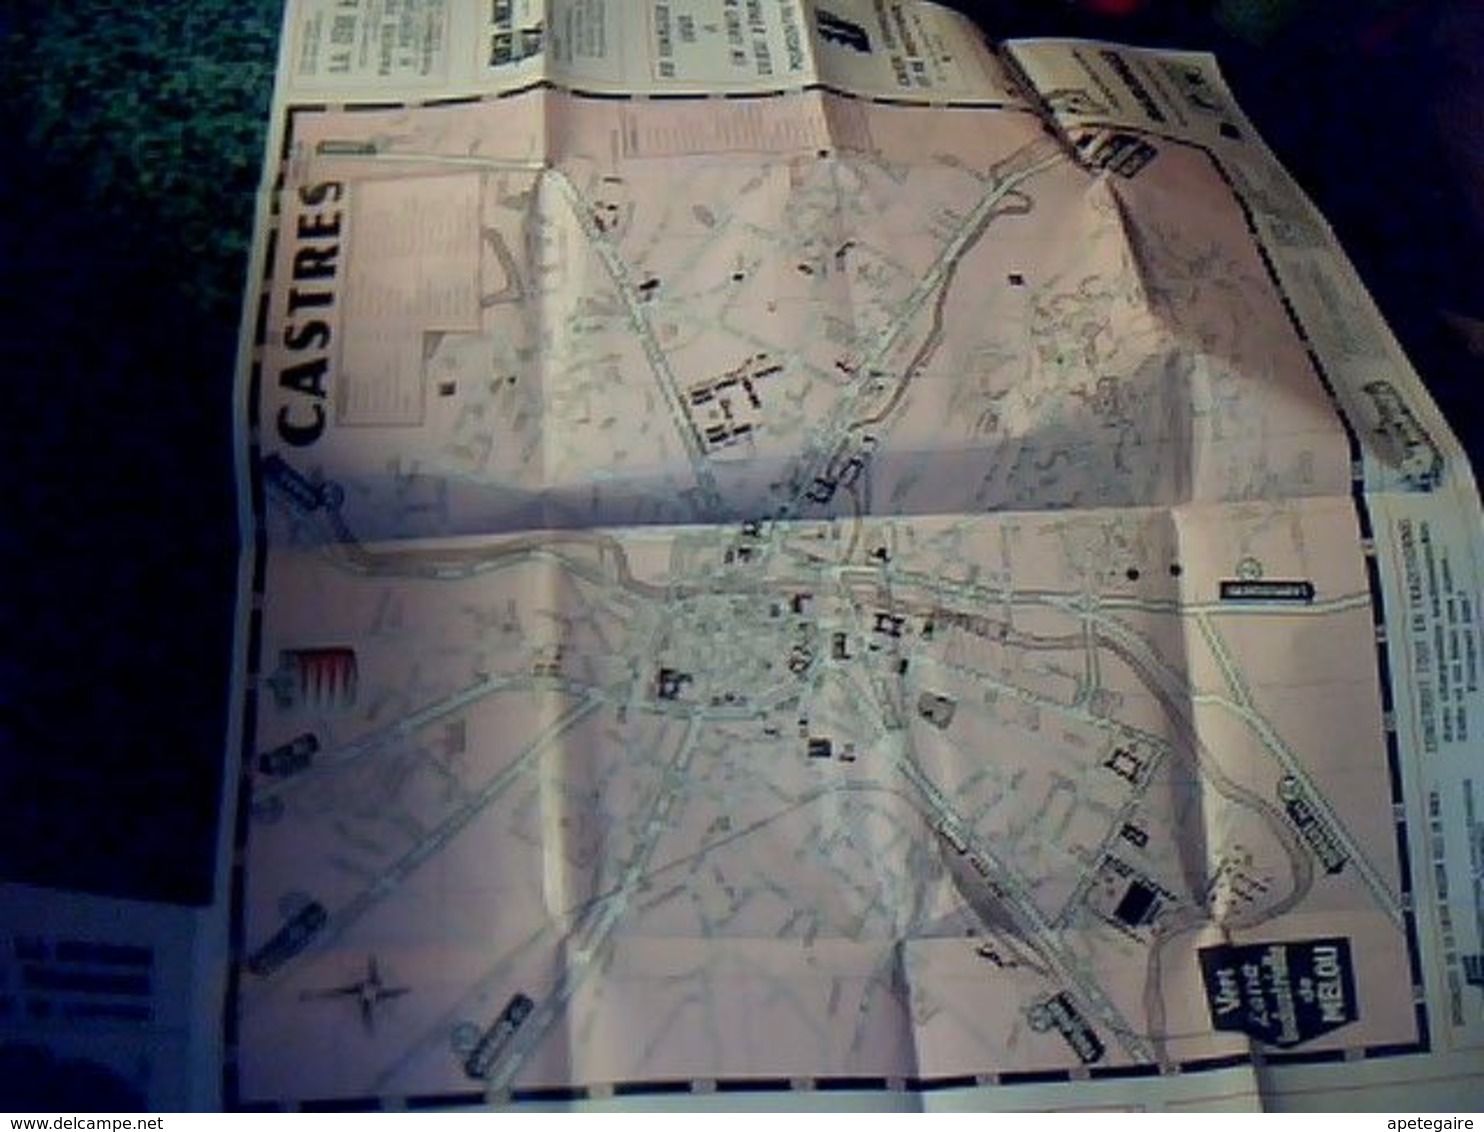 Dépliant Touristique Plan Guide Publisud Castres Et Zones Industrielles 1978 Avec Des Pubs & Plan - Tourism Brochures